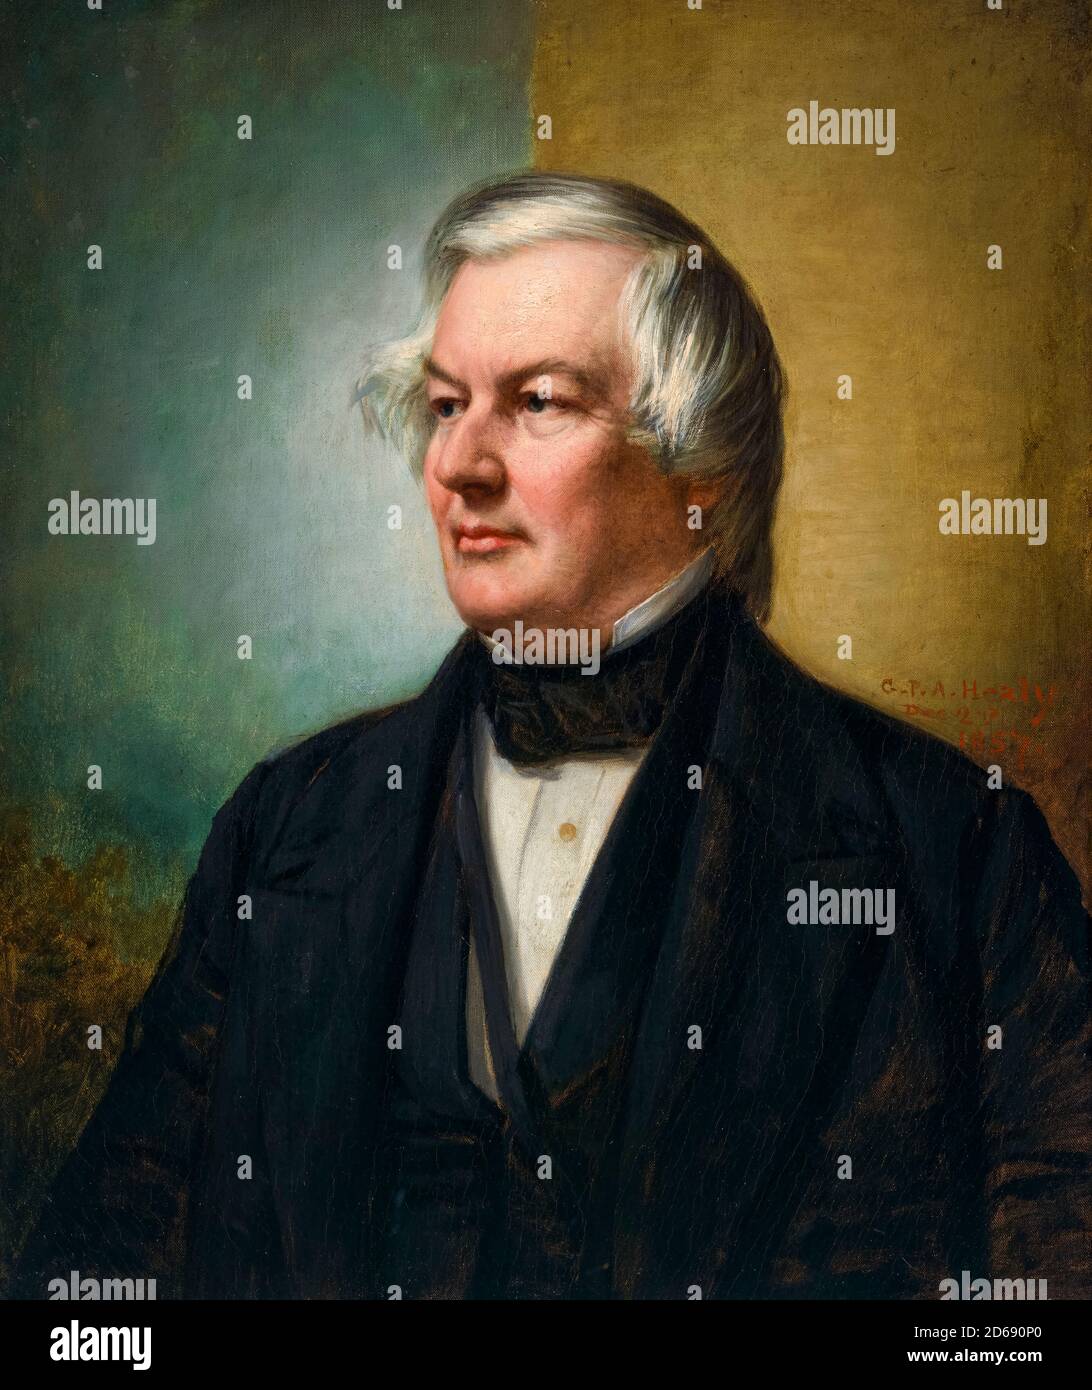 Millard Fillmore (1800-1874), 13e président des États-Unis, portrait peint par George Peter Alexander Healy, 1857 Banque D'Images